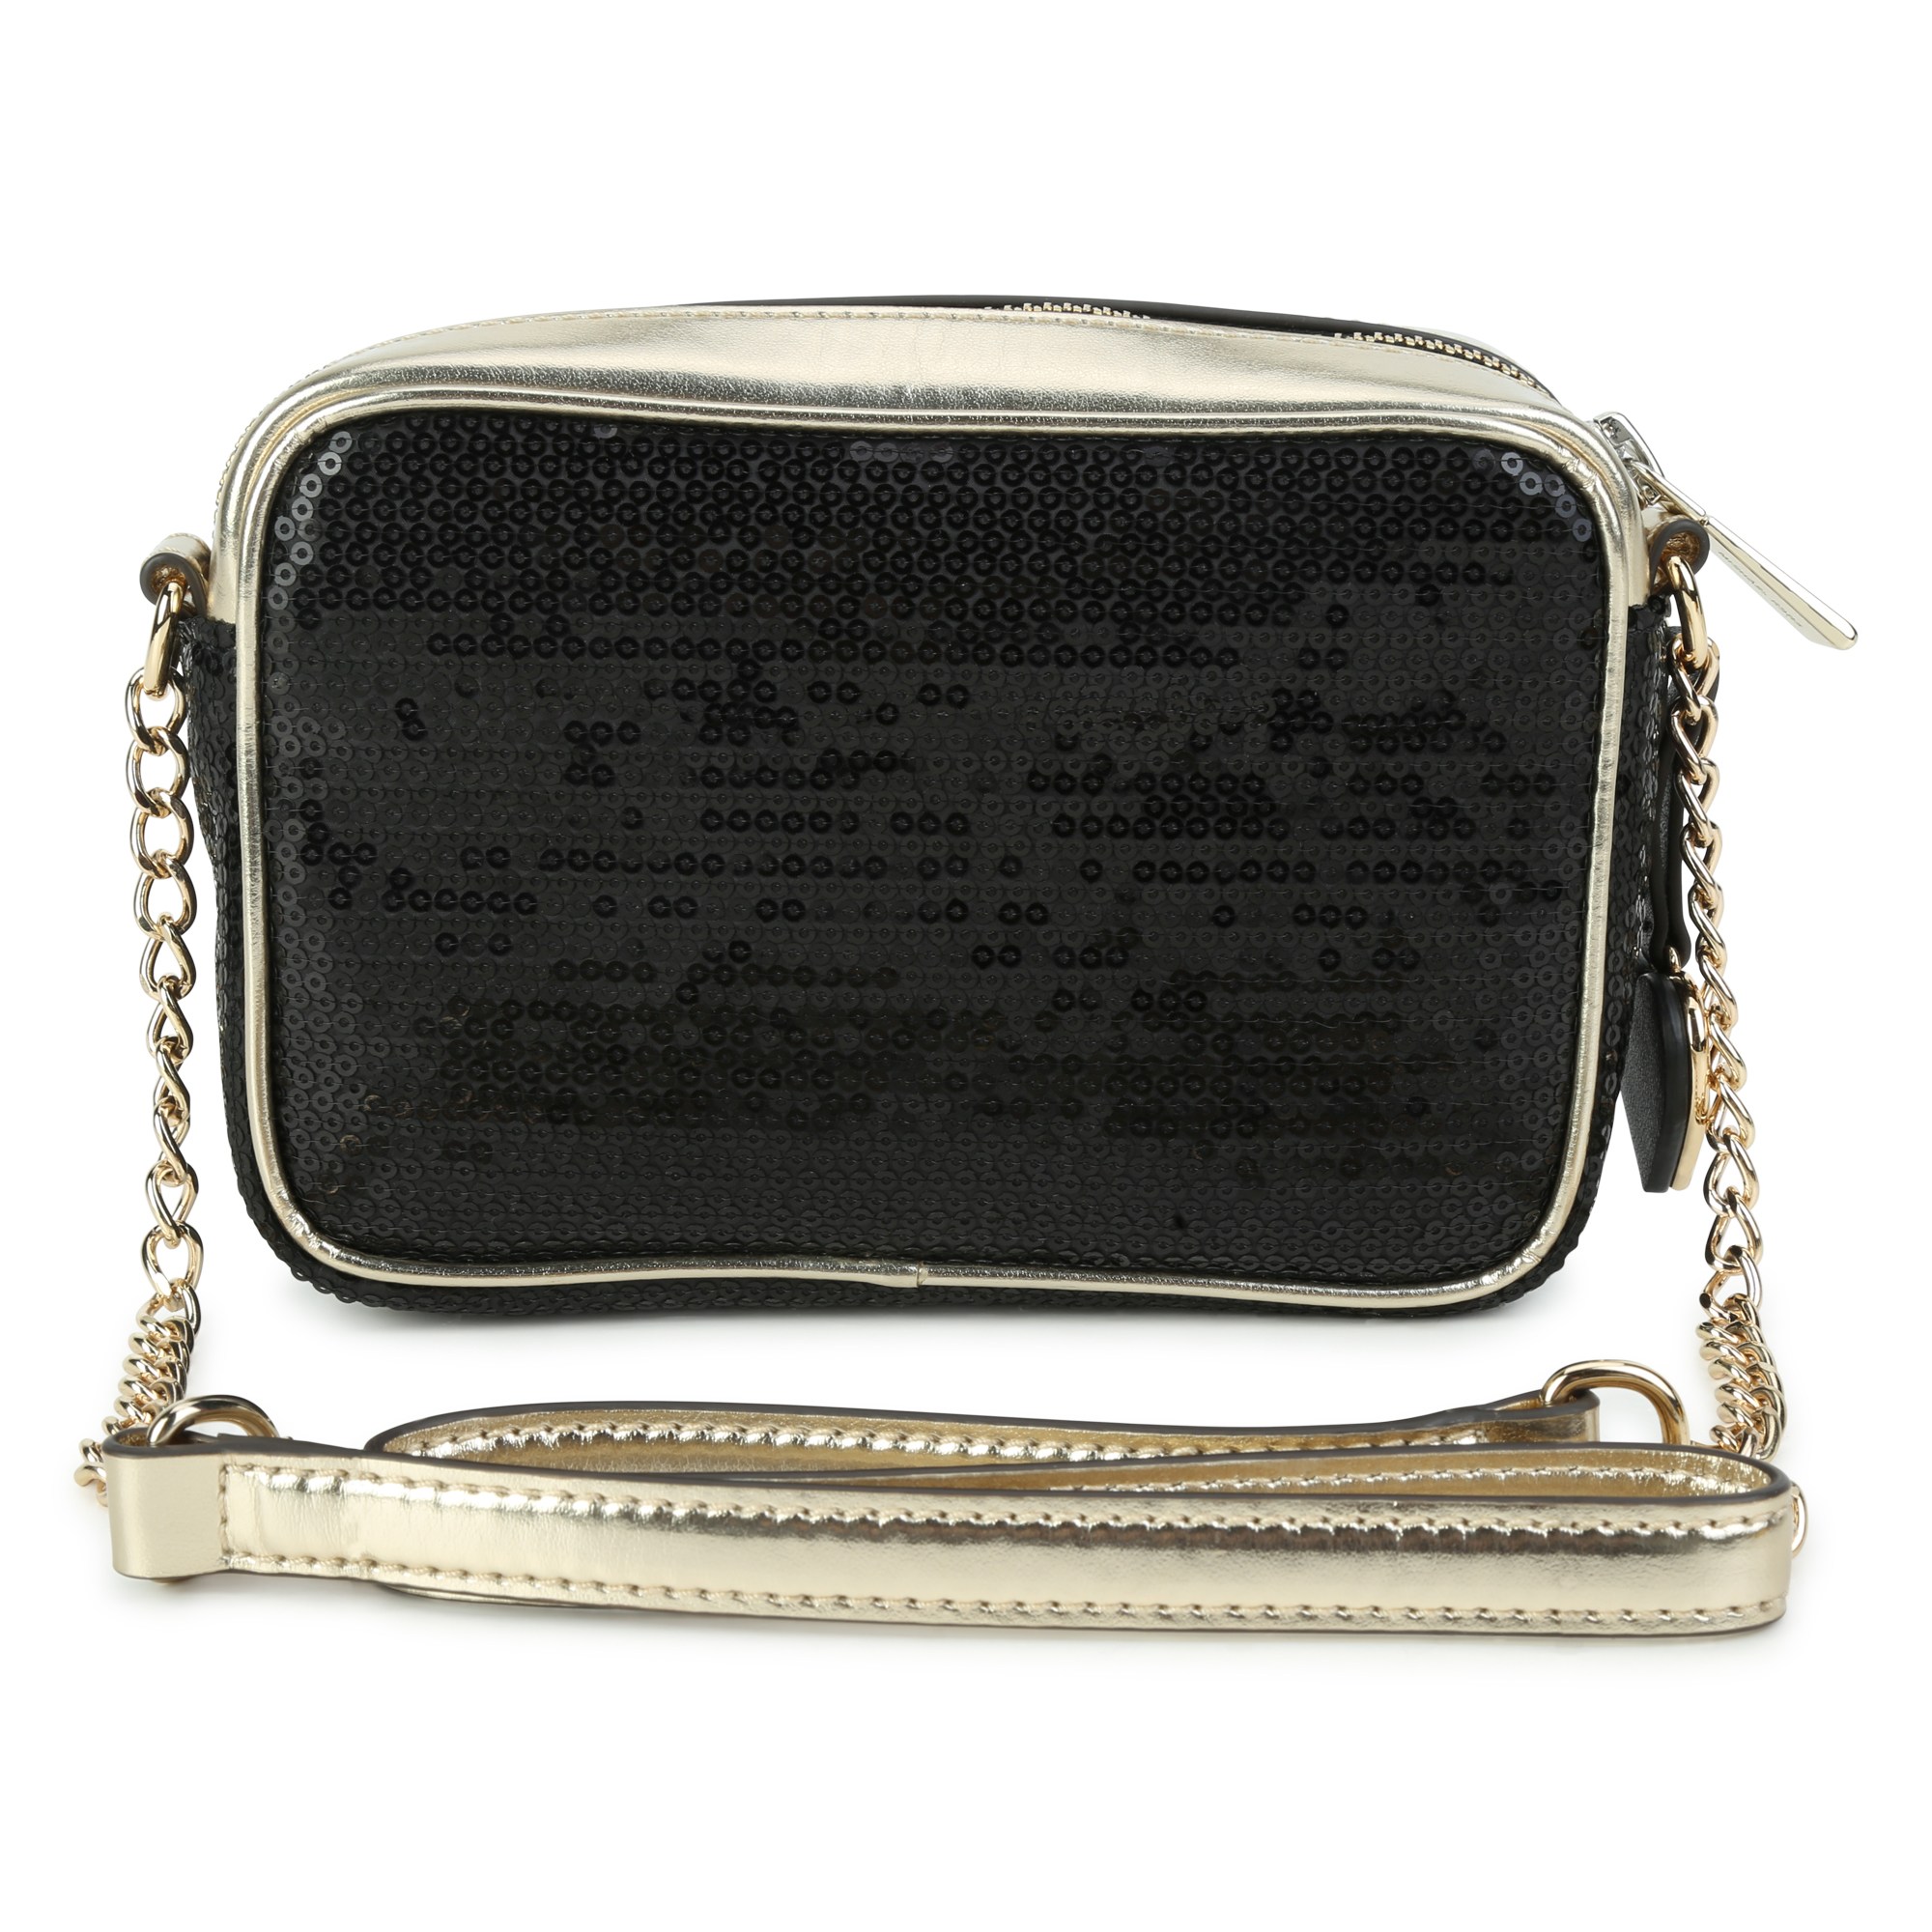 Sequin handbag MICHAEL KORS for GIRL